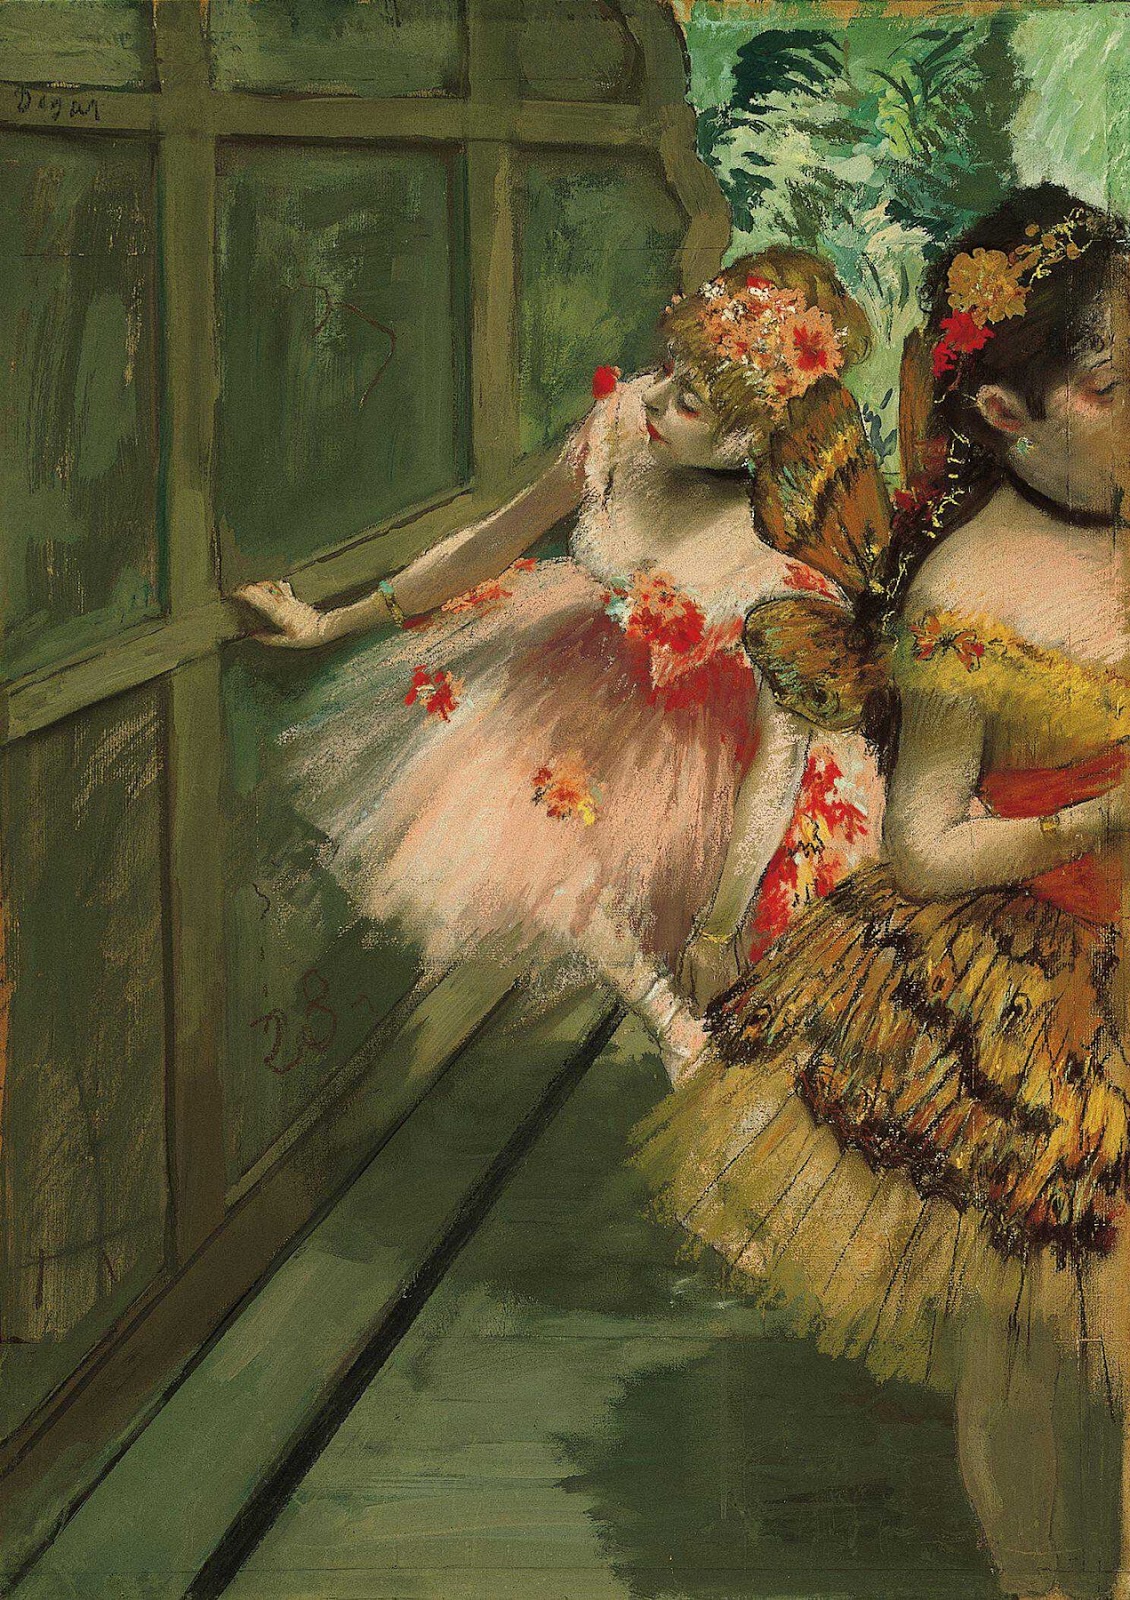 Bailarinas de ballet en trajes de Mariposas by Edgar Degas - c. 1876-1878 Museo Norton Simon